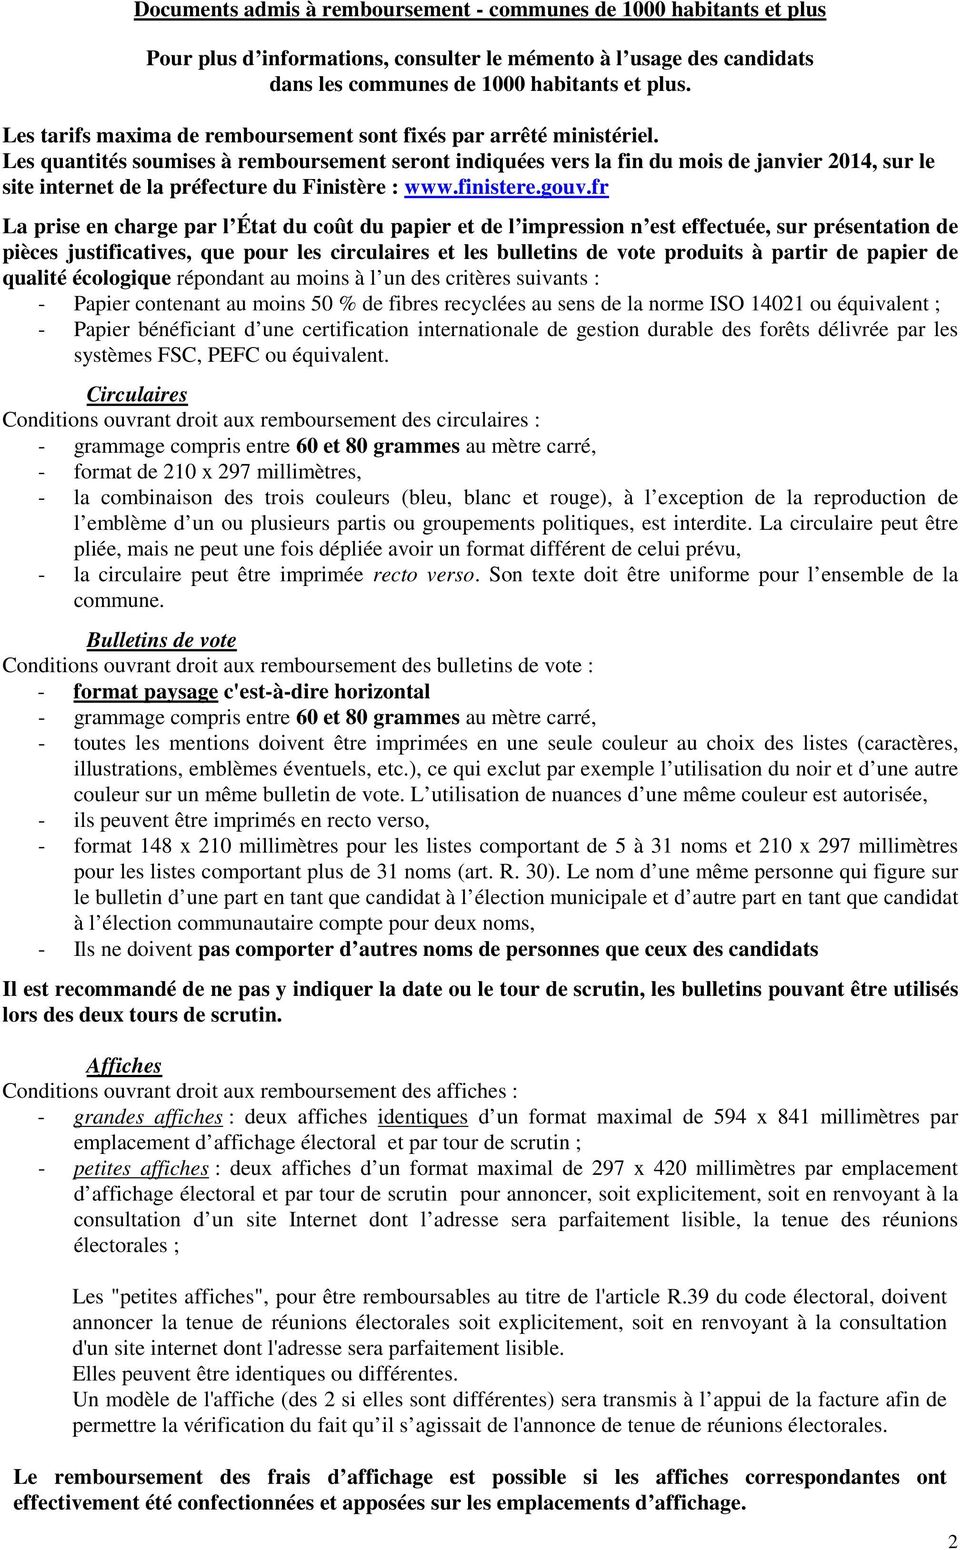 Les quantités soumises à remboursement seront indiquées vers la fin du mois de janvier 2014, sur le site internet de la préfecture du Finistère : www.finistere.gouv.